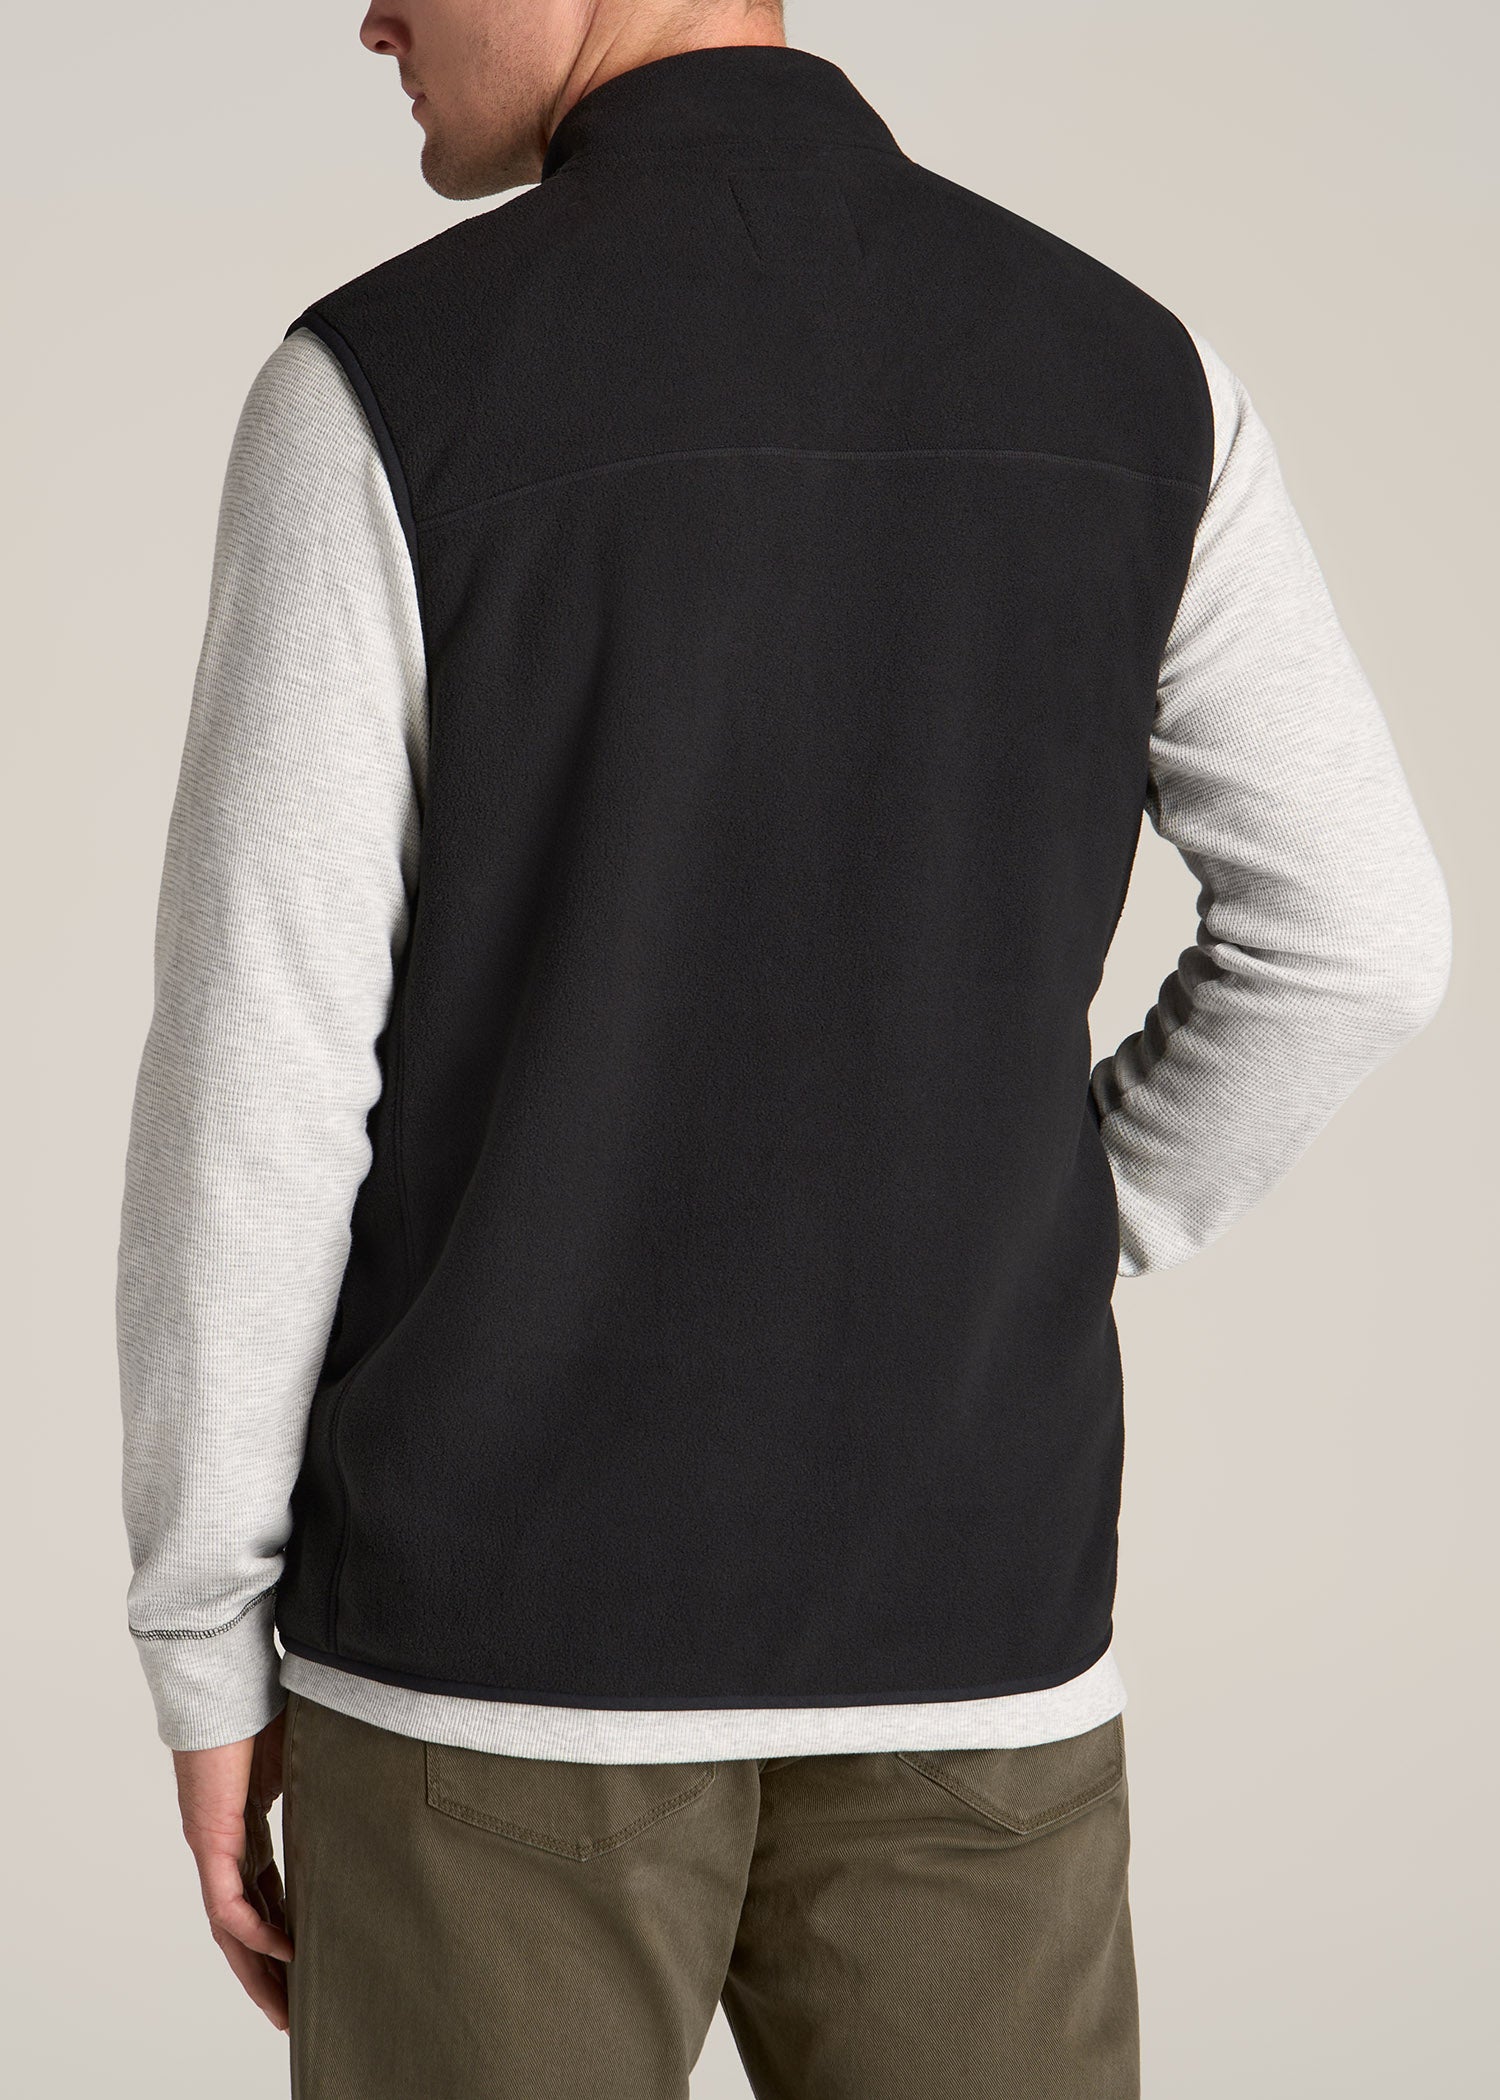 Polar Fleece Sweater Full Zip Vest for Tall Men | American Tall